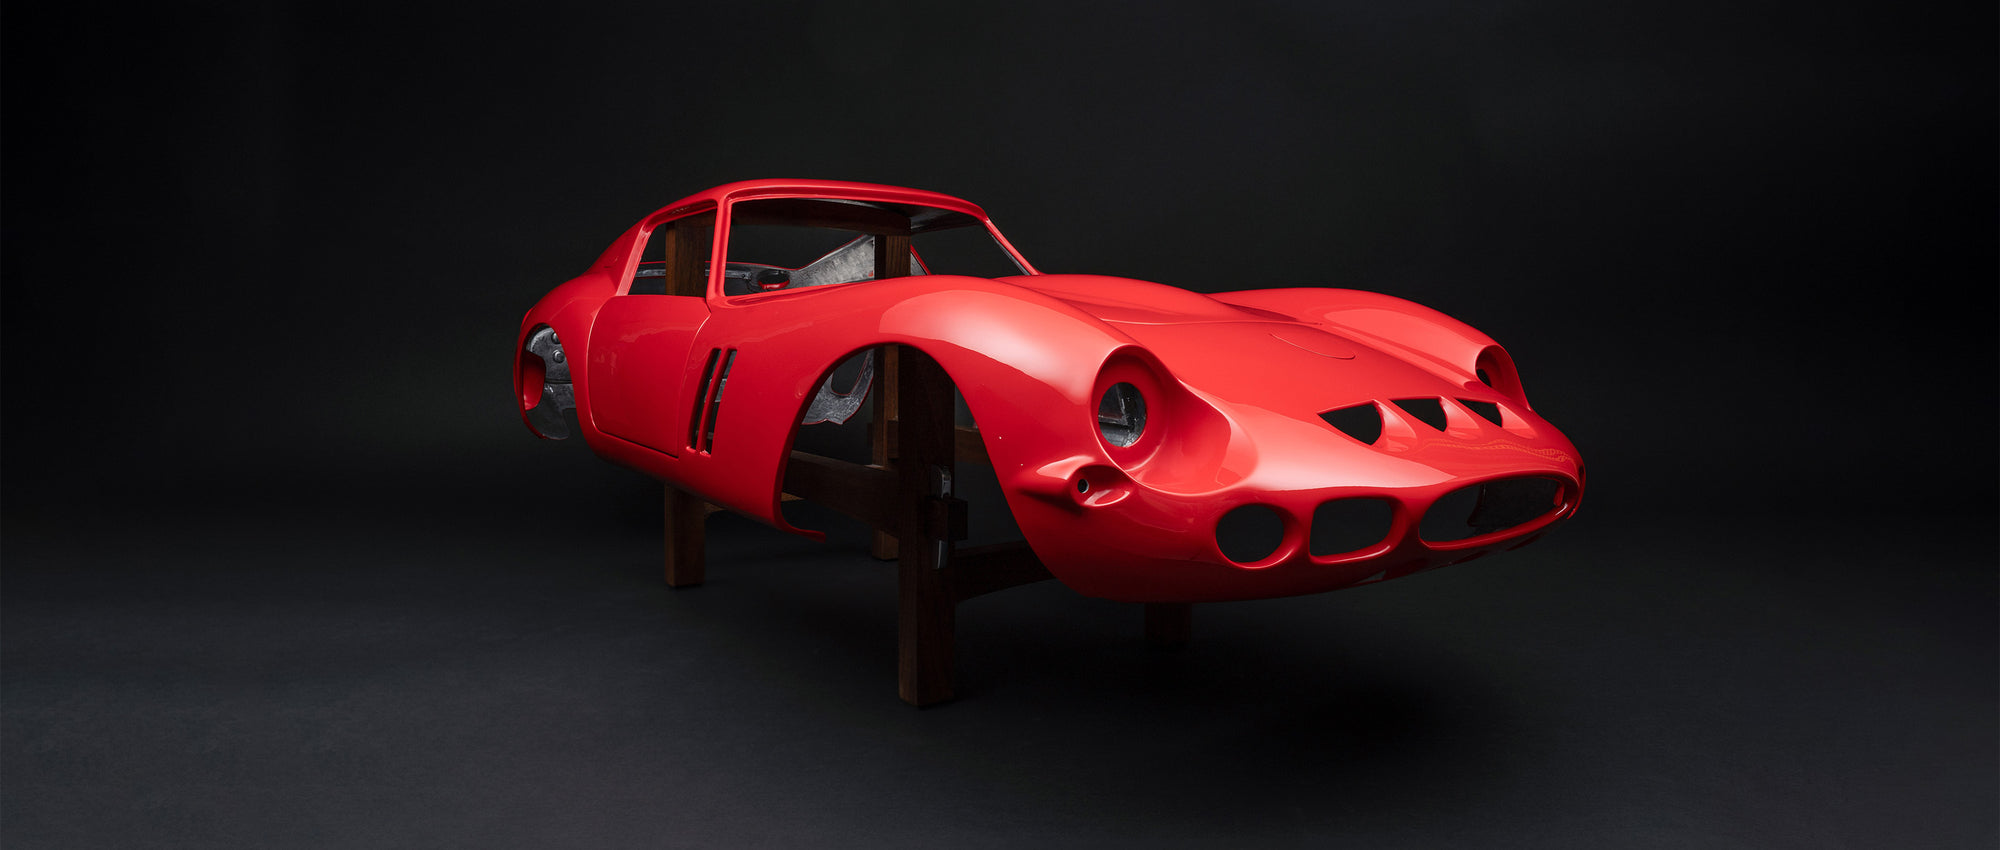 フェラーリ 250 GTO - 塗装済みアルミニウムボディレプリカ